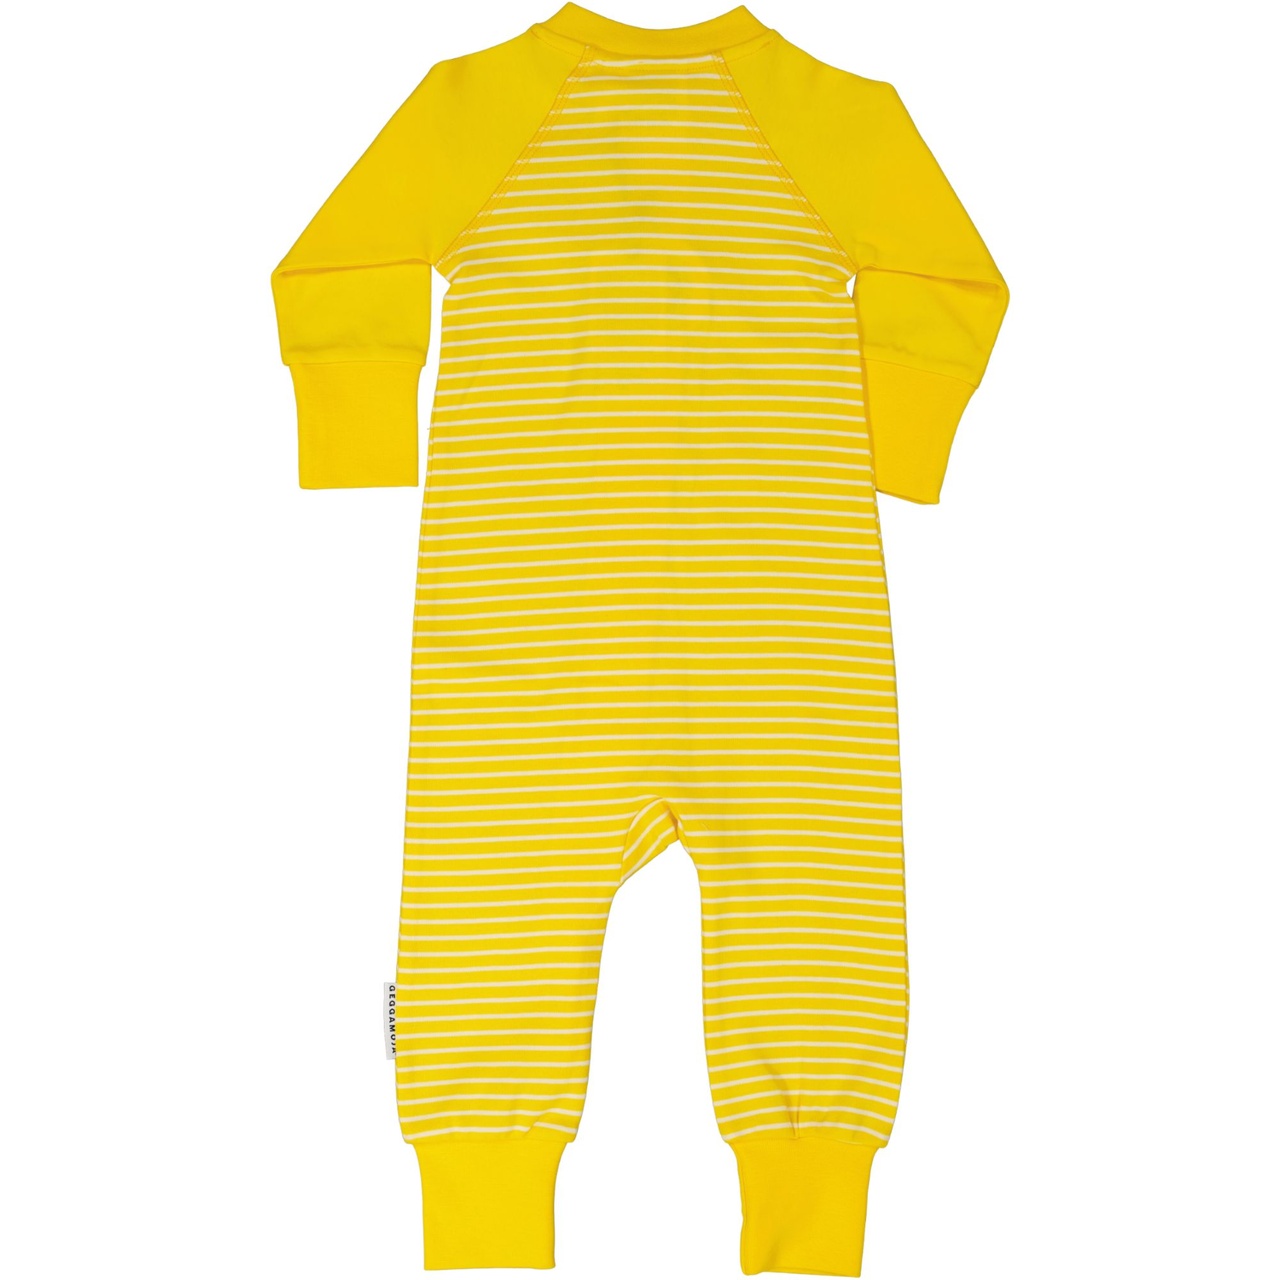 Pyjamas Yellow/white 15